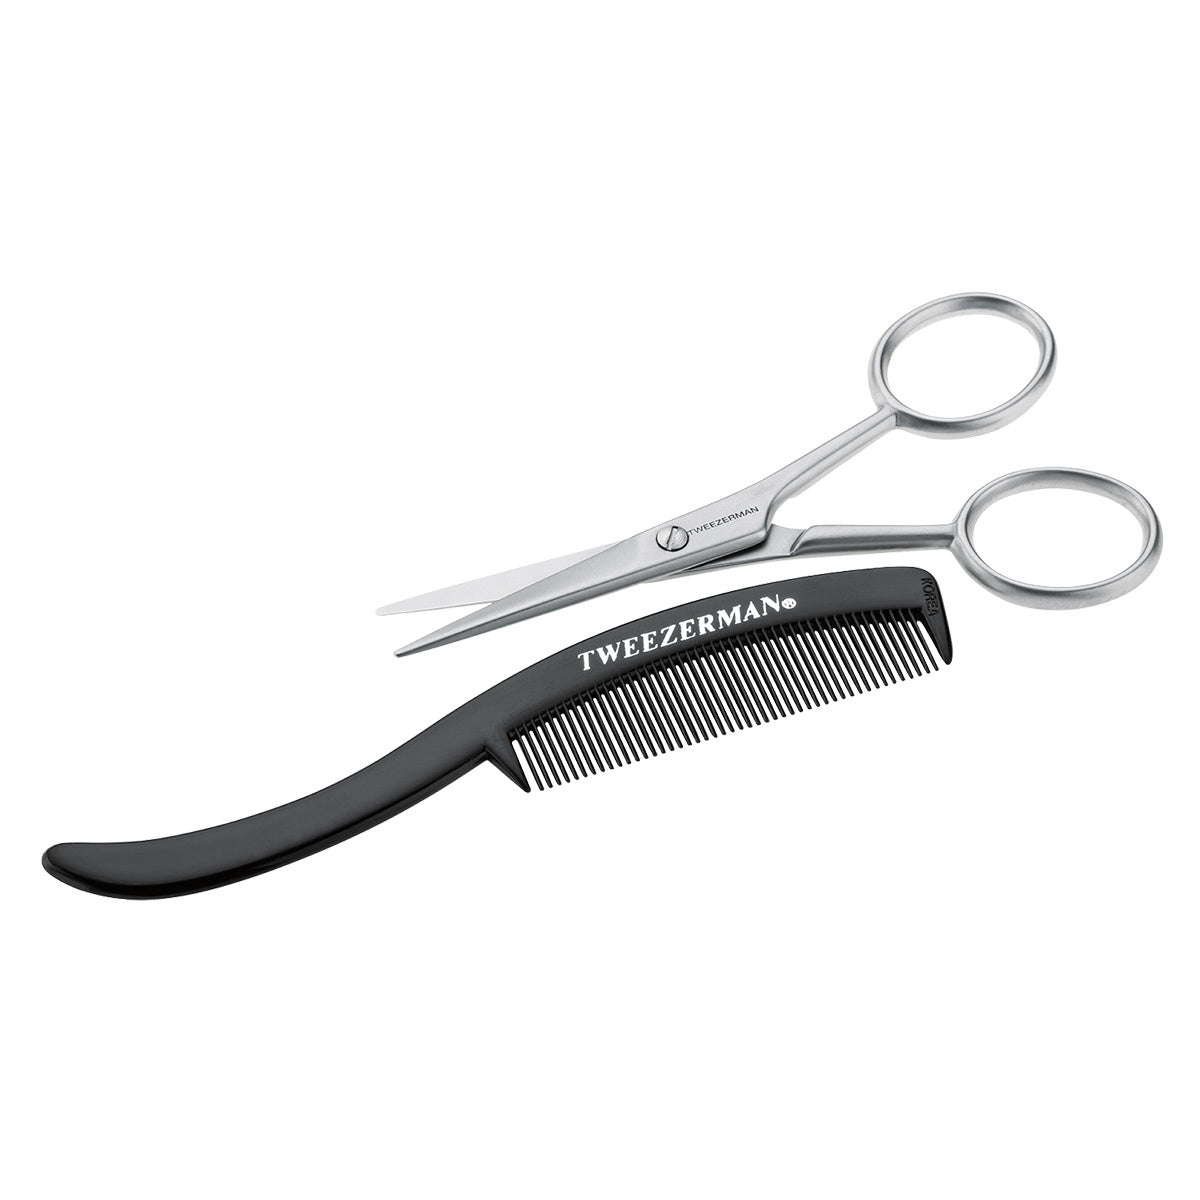 Primary image of Moustache Scissors + Comb